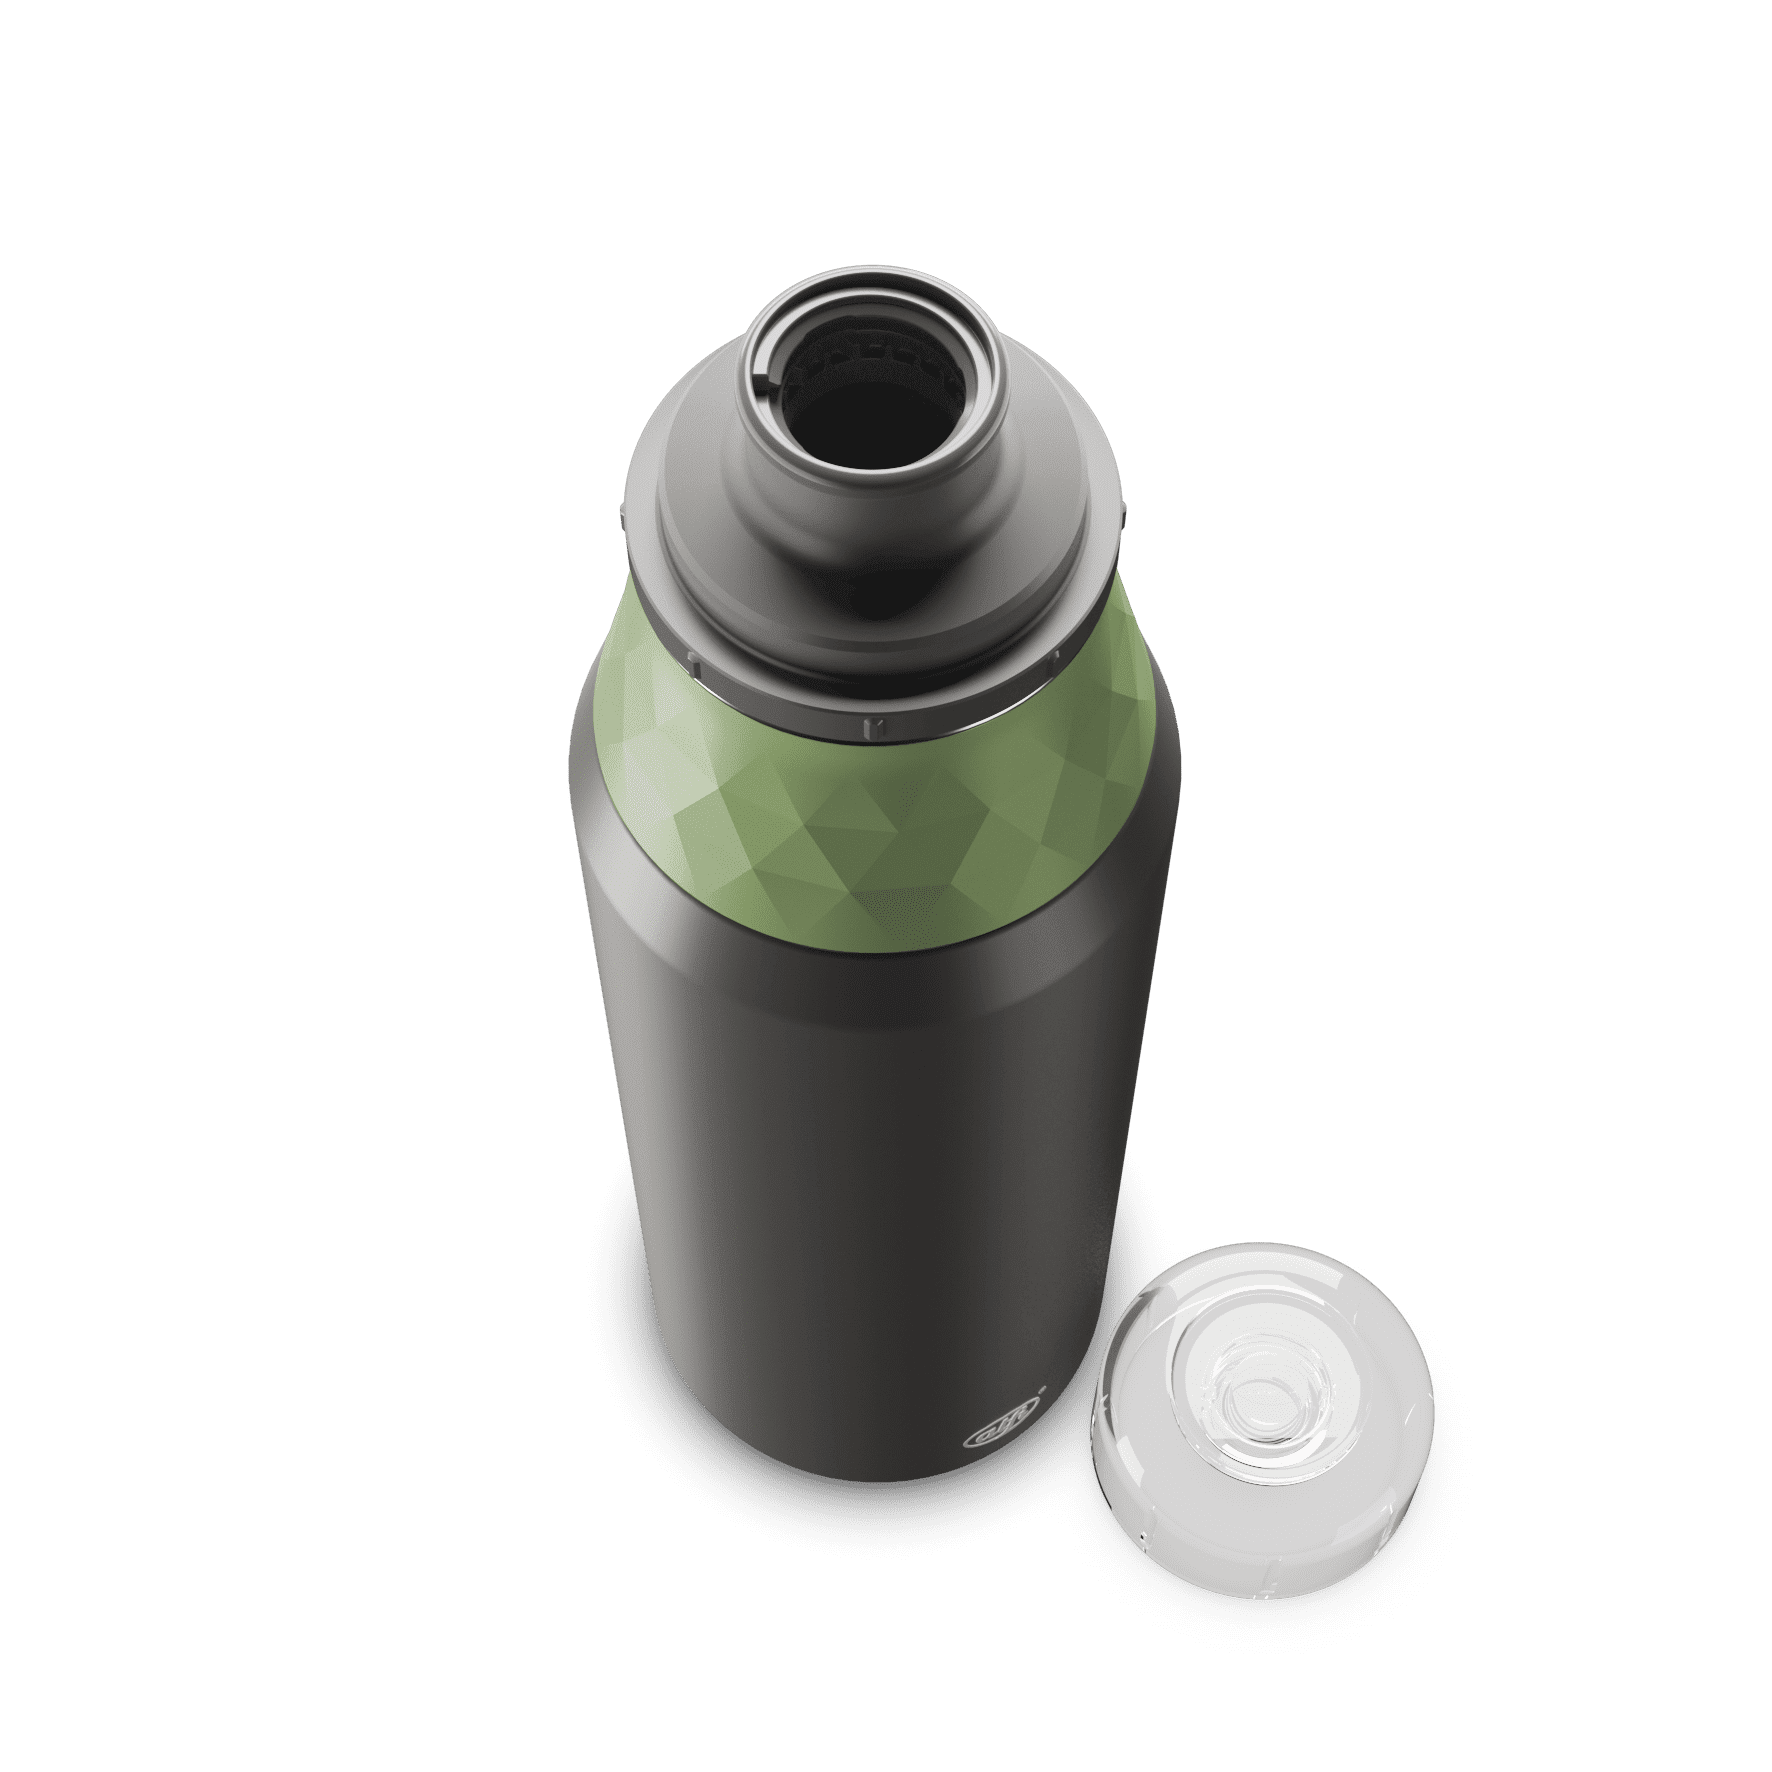 alfi Trinkflasche Endless Bottle FUSION cool grey/celadon green 0,9 l